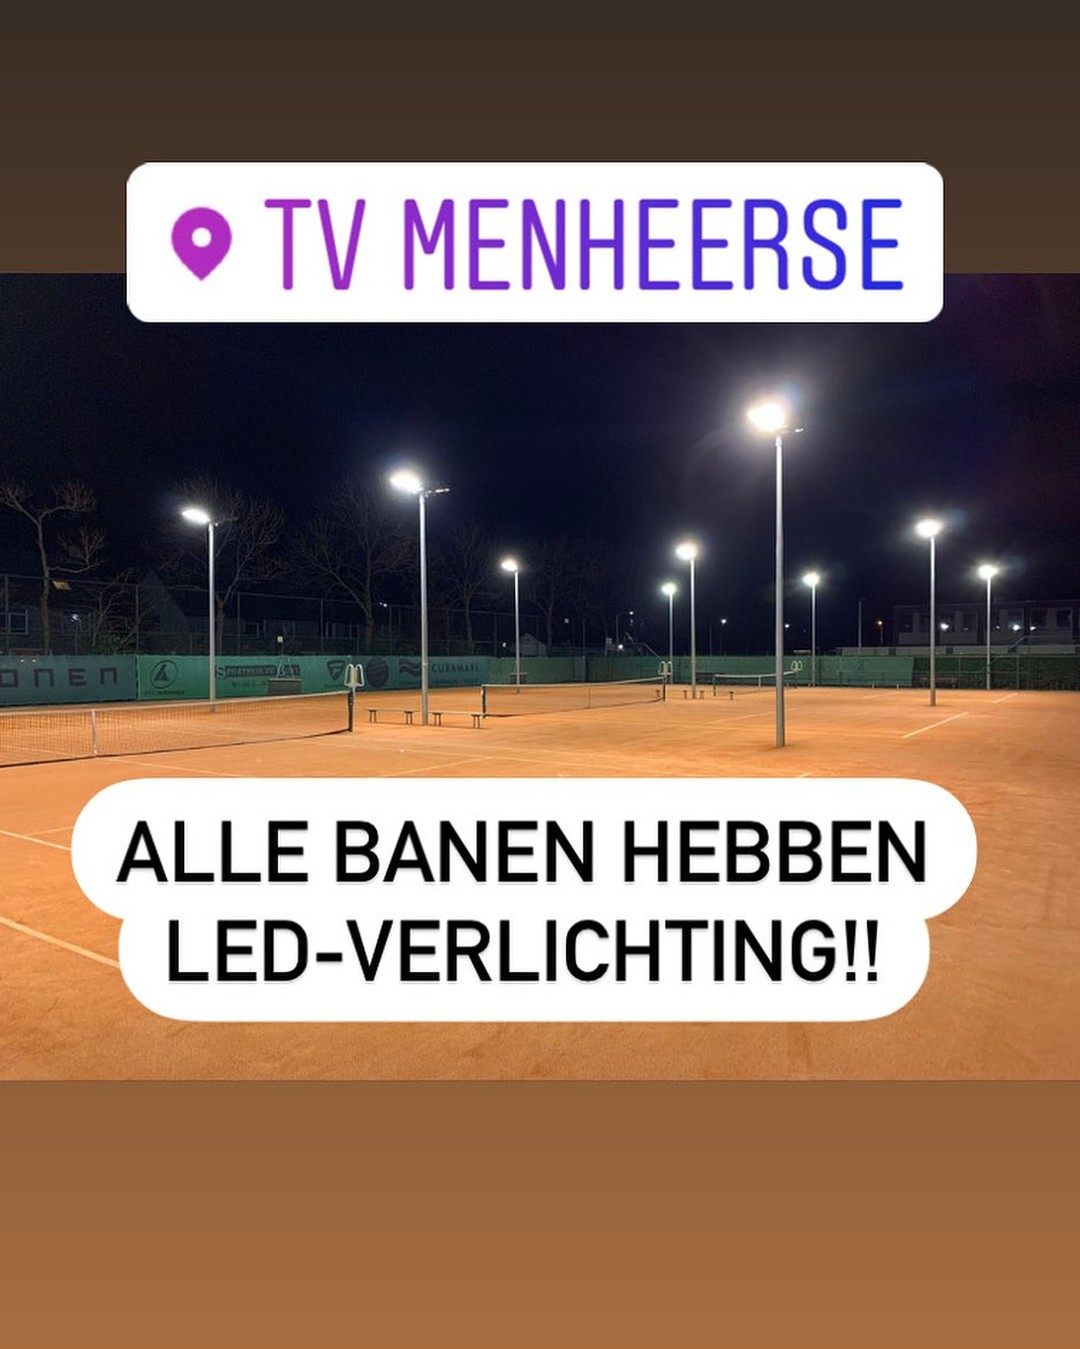 xlt-300w ledlight vocare tv menheerse middelharnis tennis